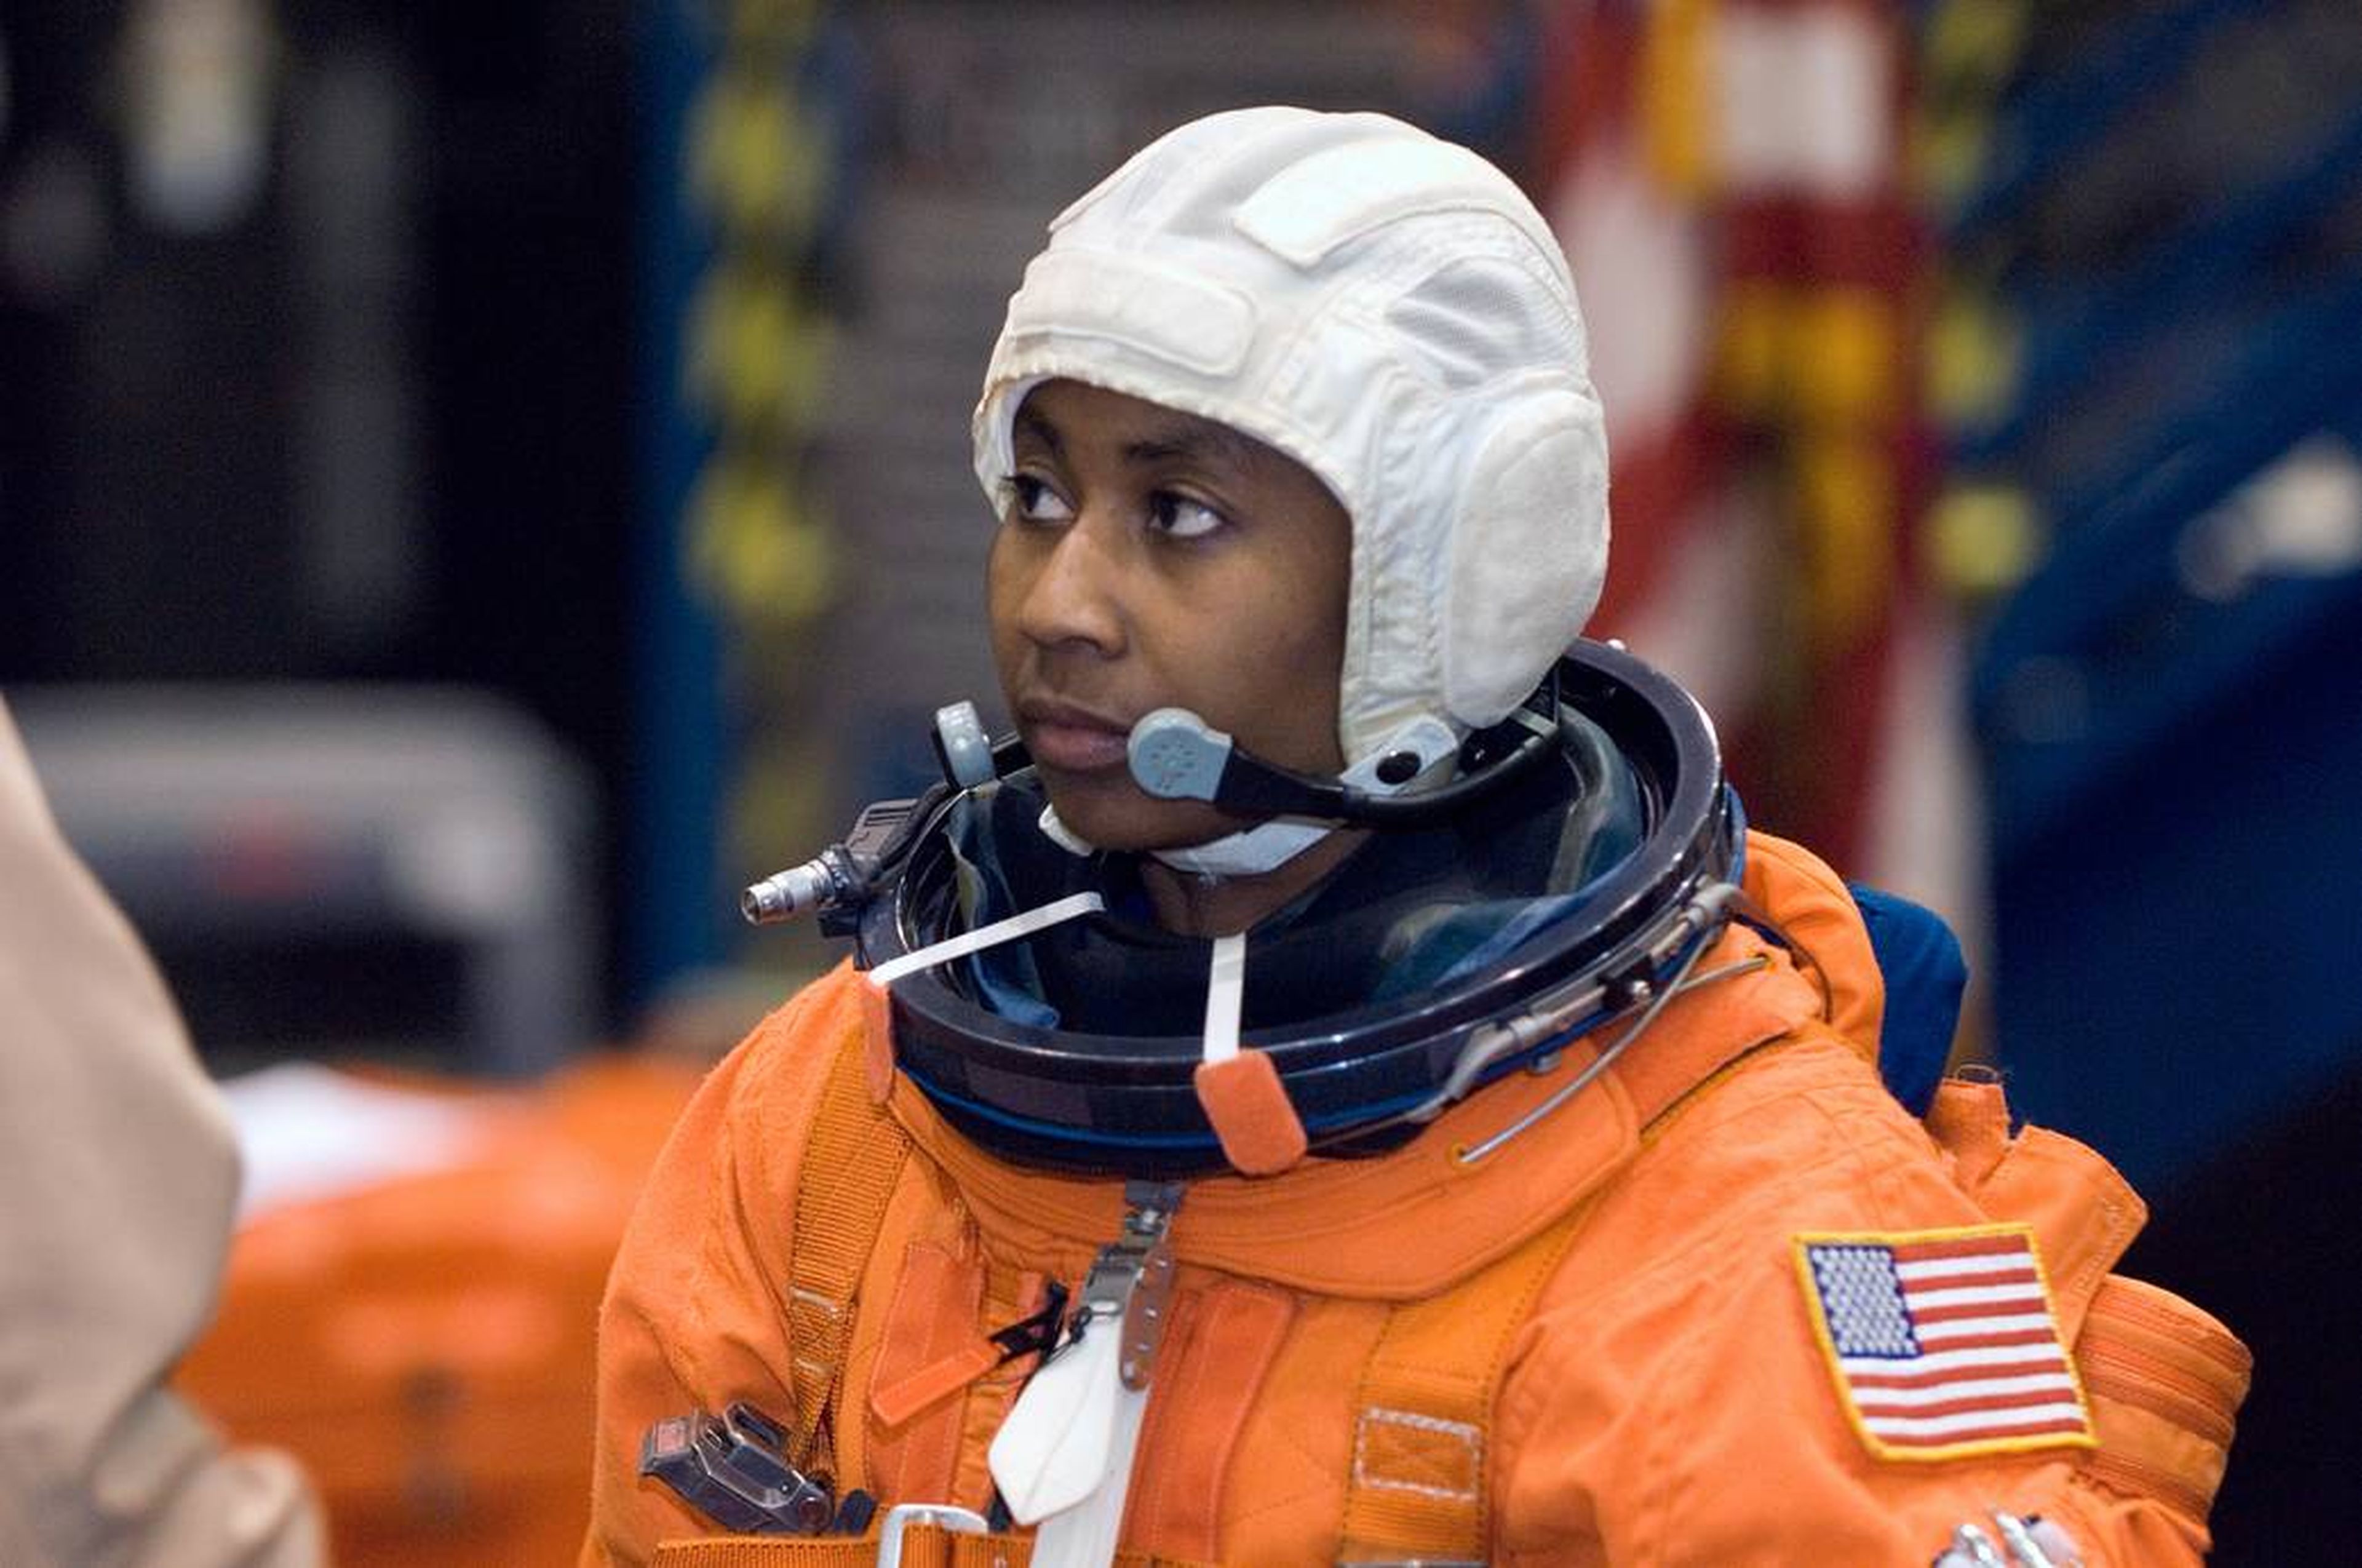 La astronauta Stephanie Wilson entrenando en 2007 para su primer viaje espacial.